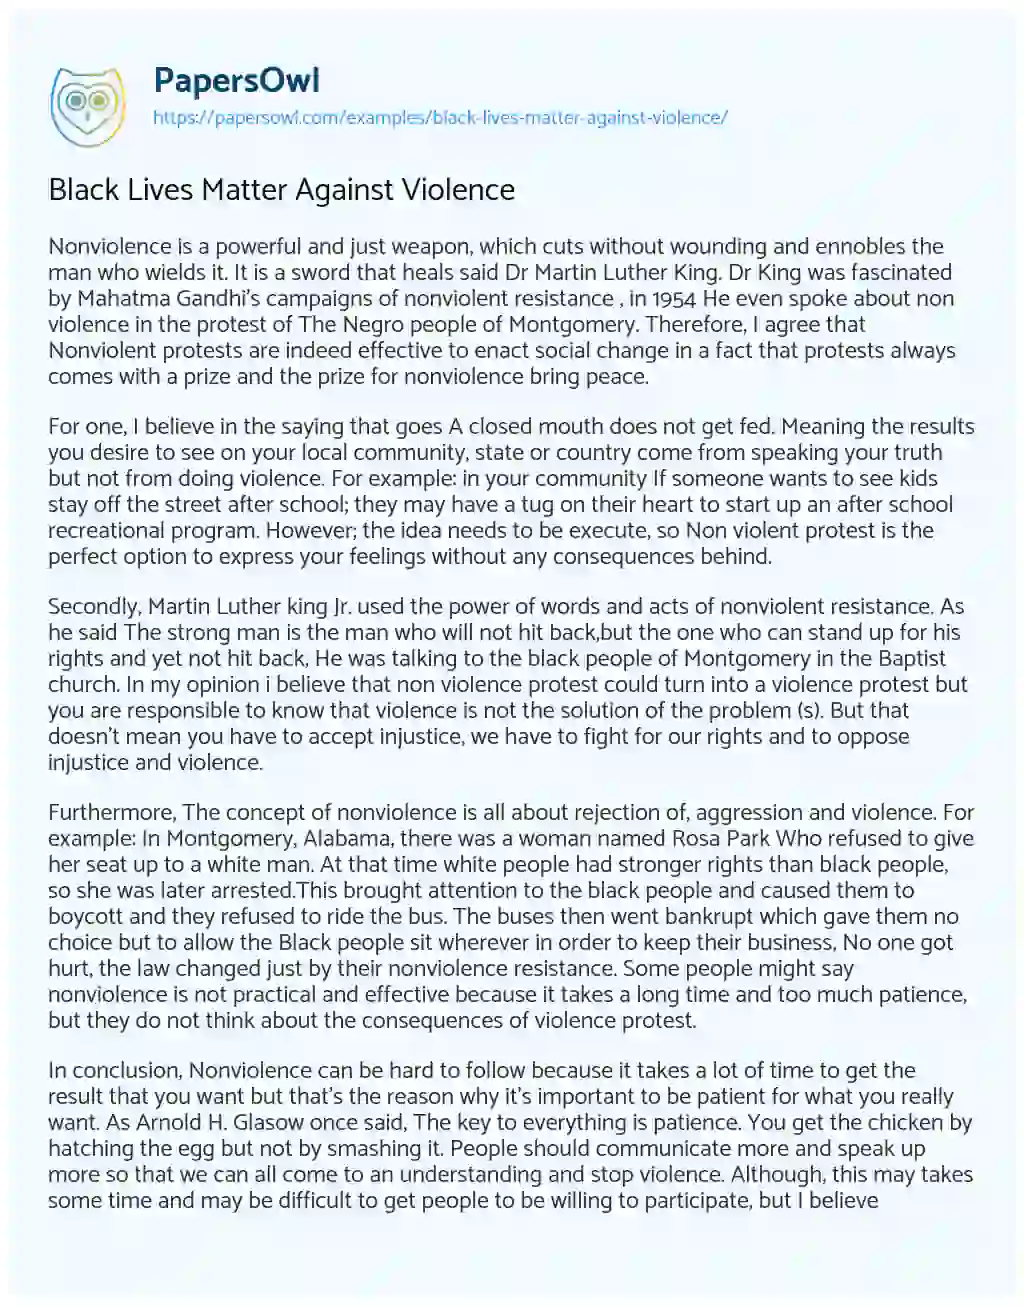 Essay on Black Lives Matter against Violence